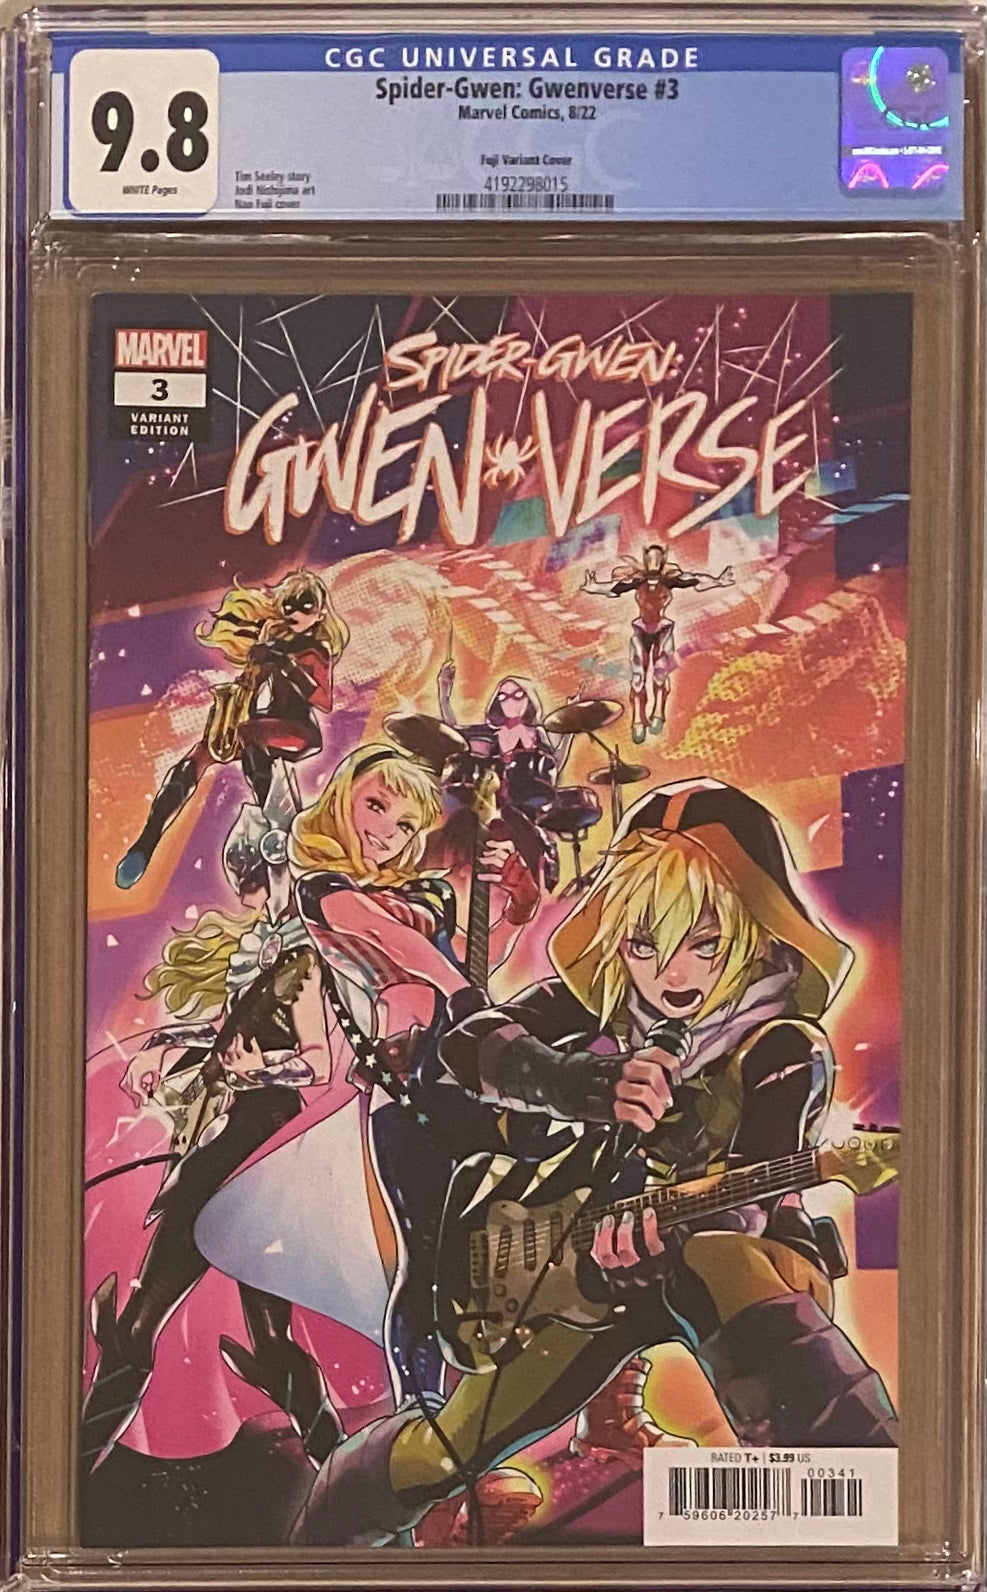 Spider-Gwen: Gwenverse #3 Fuji 1:25 Retailer Incentive Variant CGC 9.8